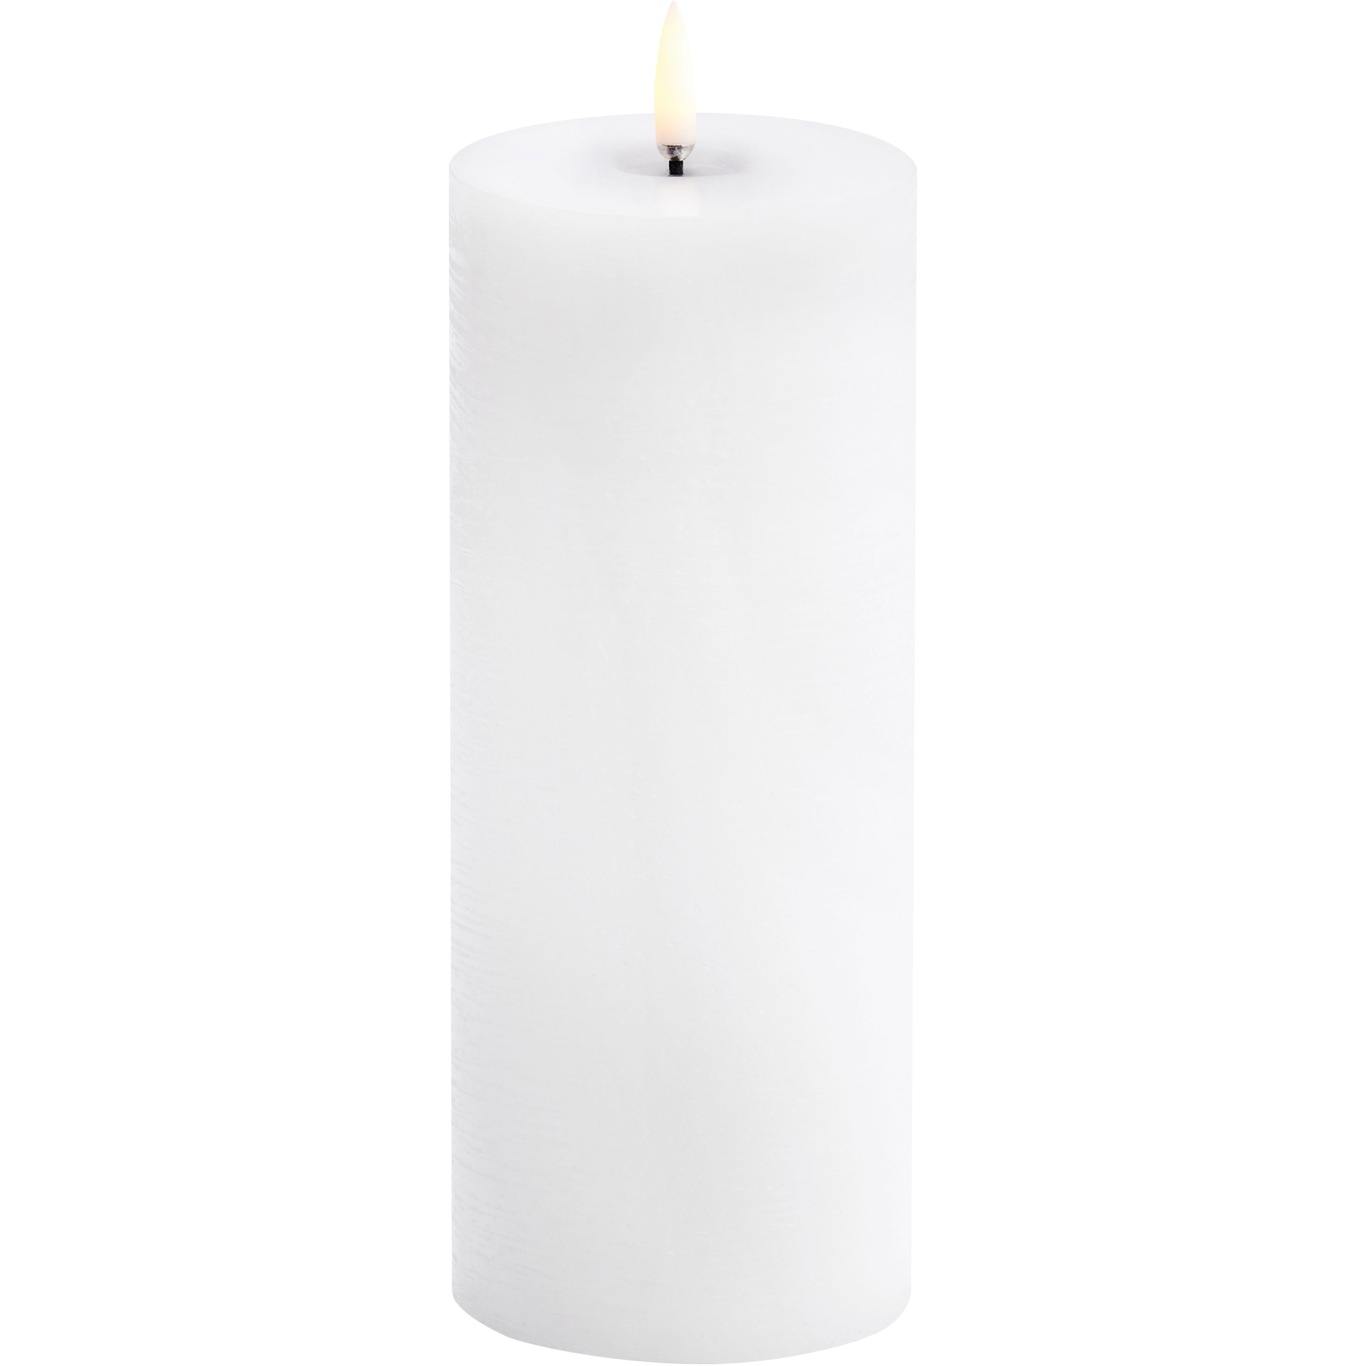 LED Kubbelys Smeltet 7,8x20,3 cm, Nordic White